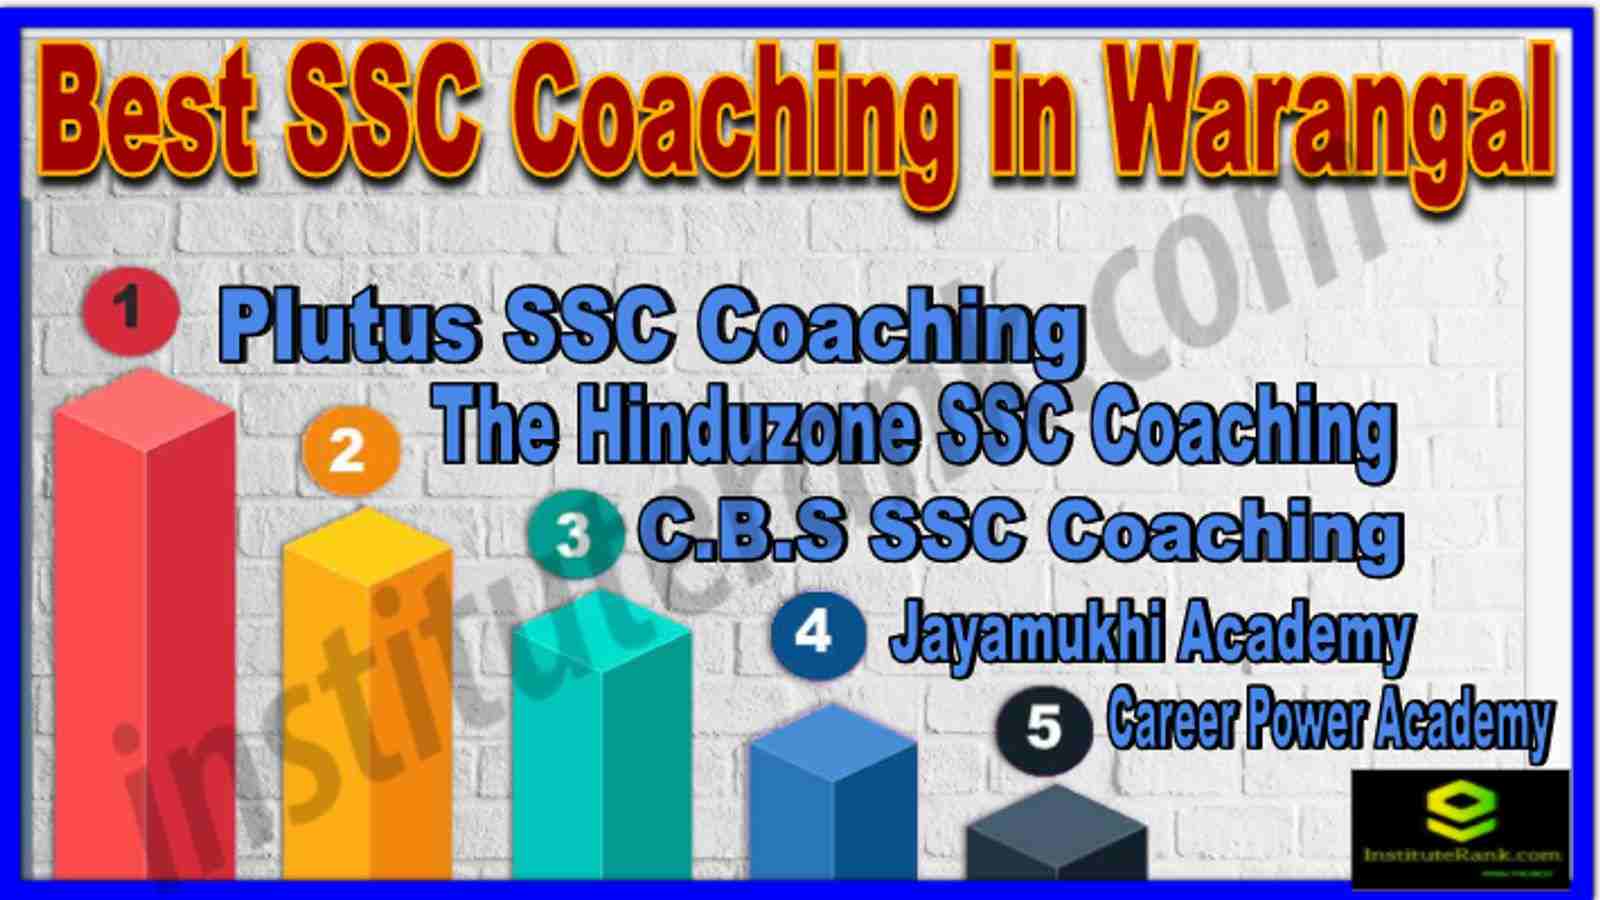 Best SSC Coaching in Warangal